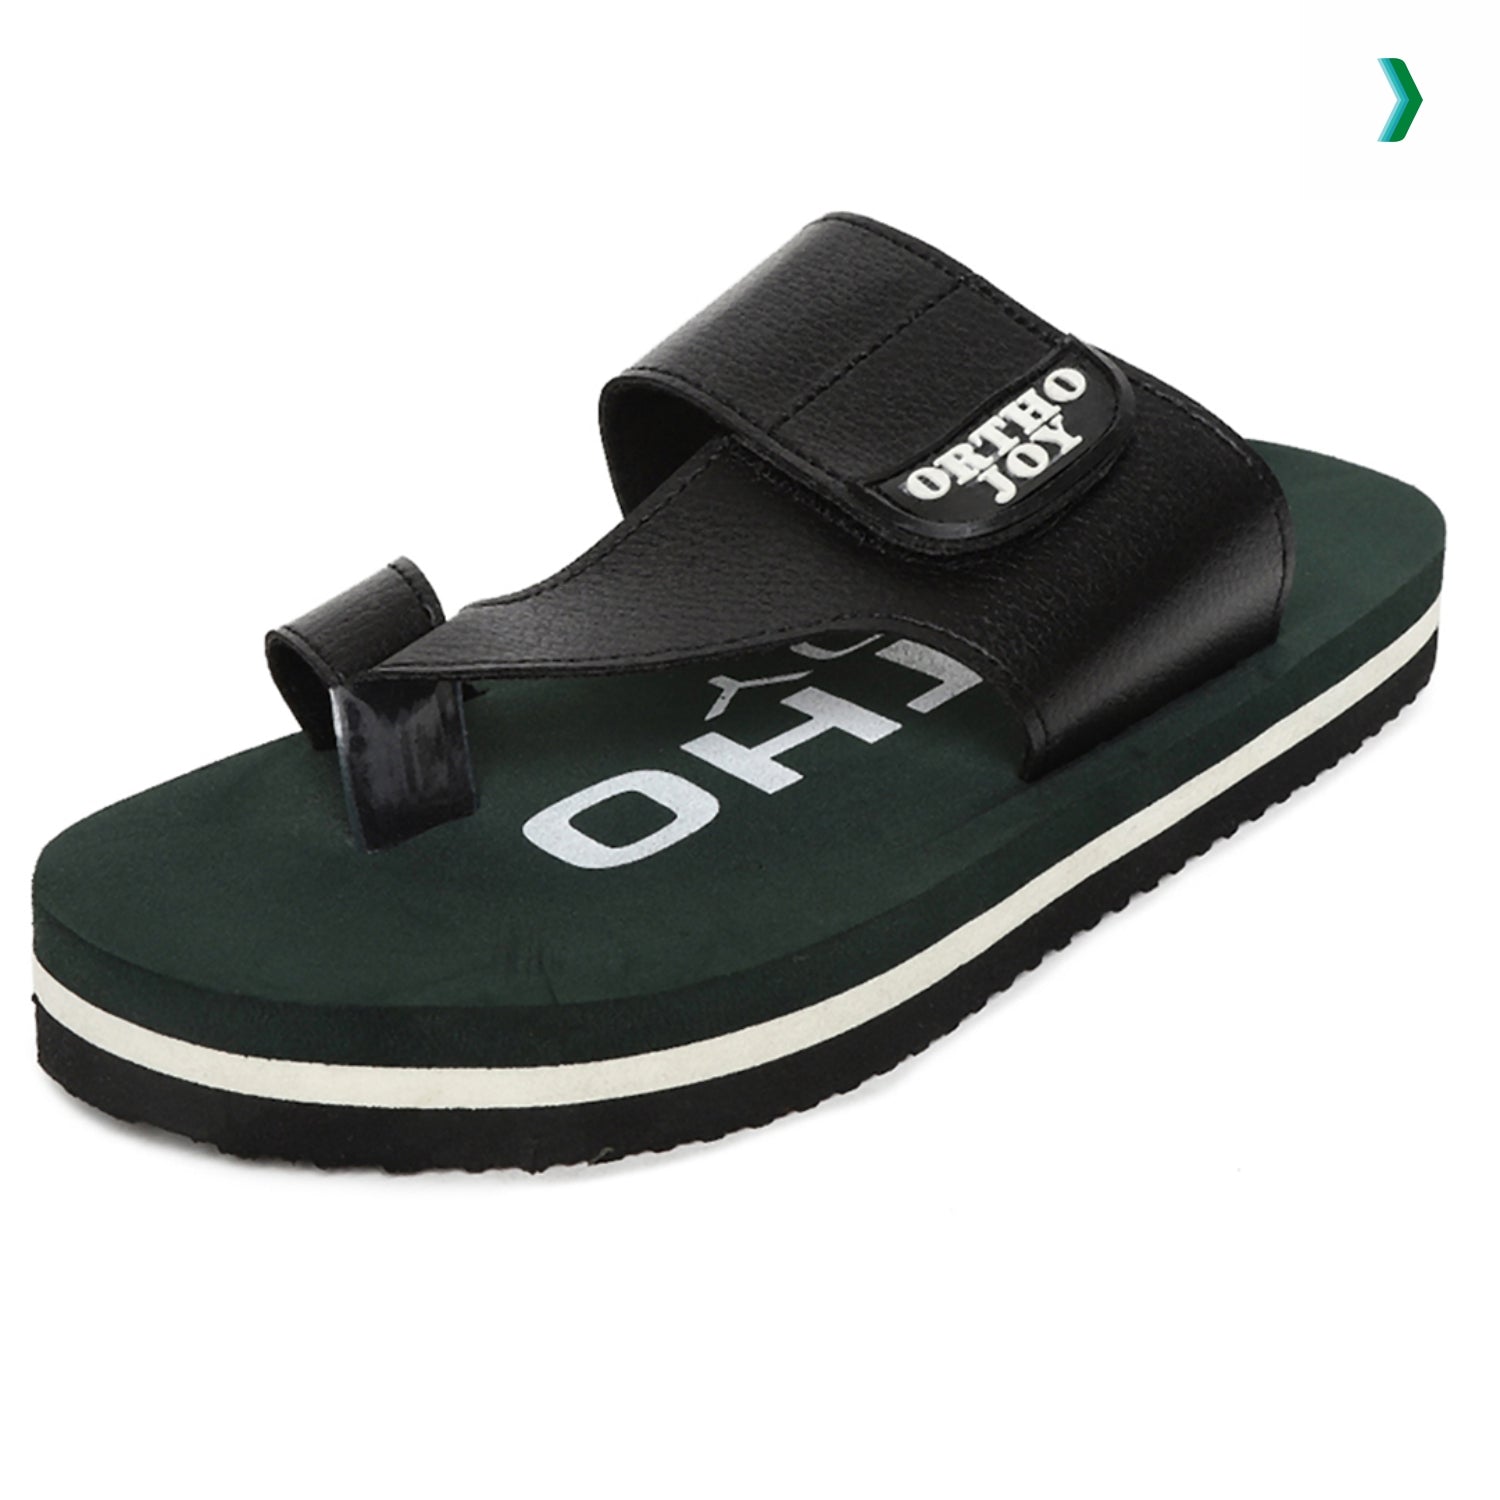 Buy ORTHO JOY Extra Soft Doctor Ortho Slippers for Men 